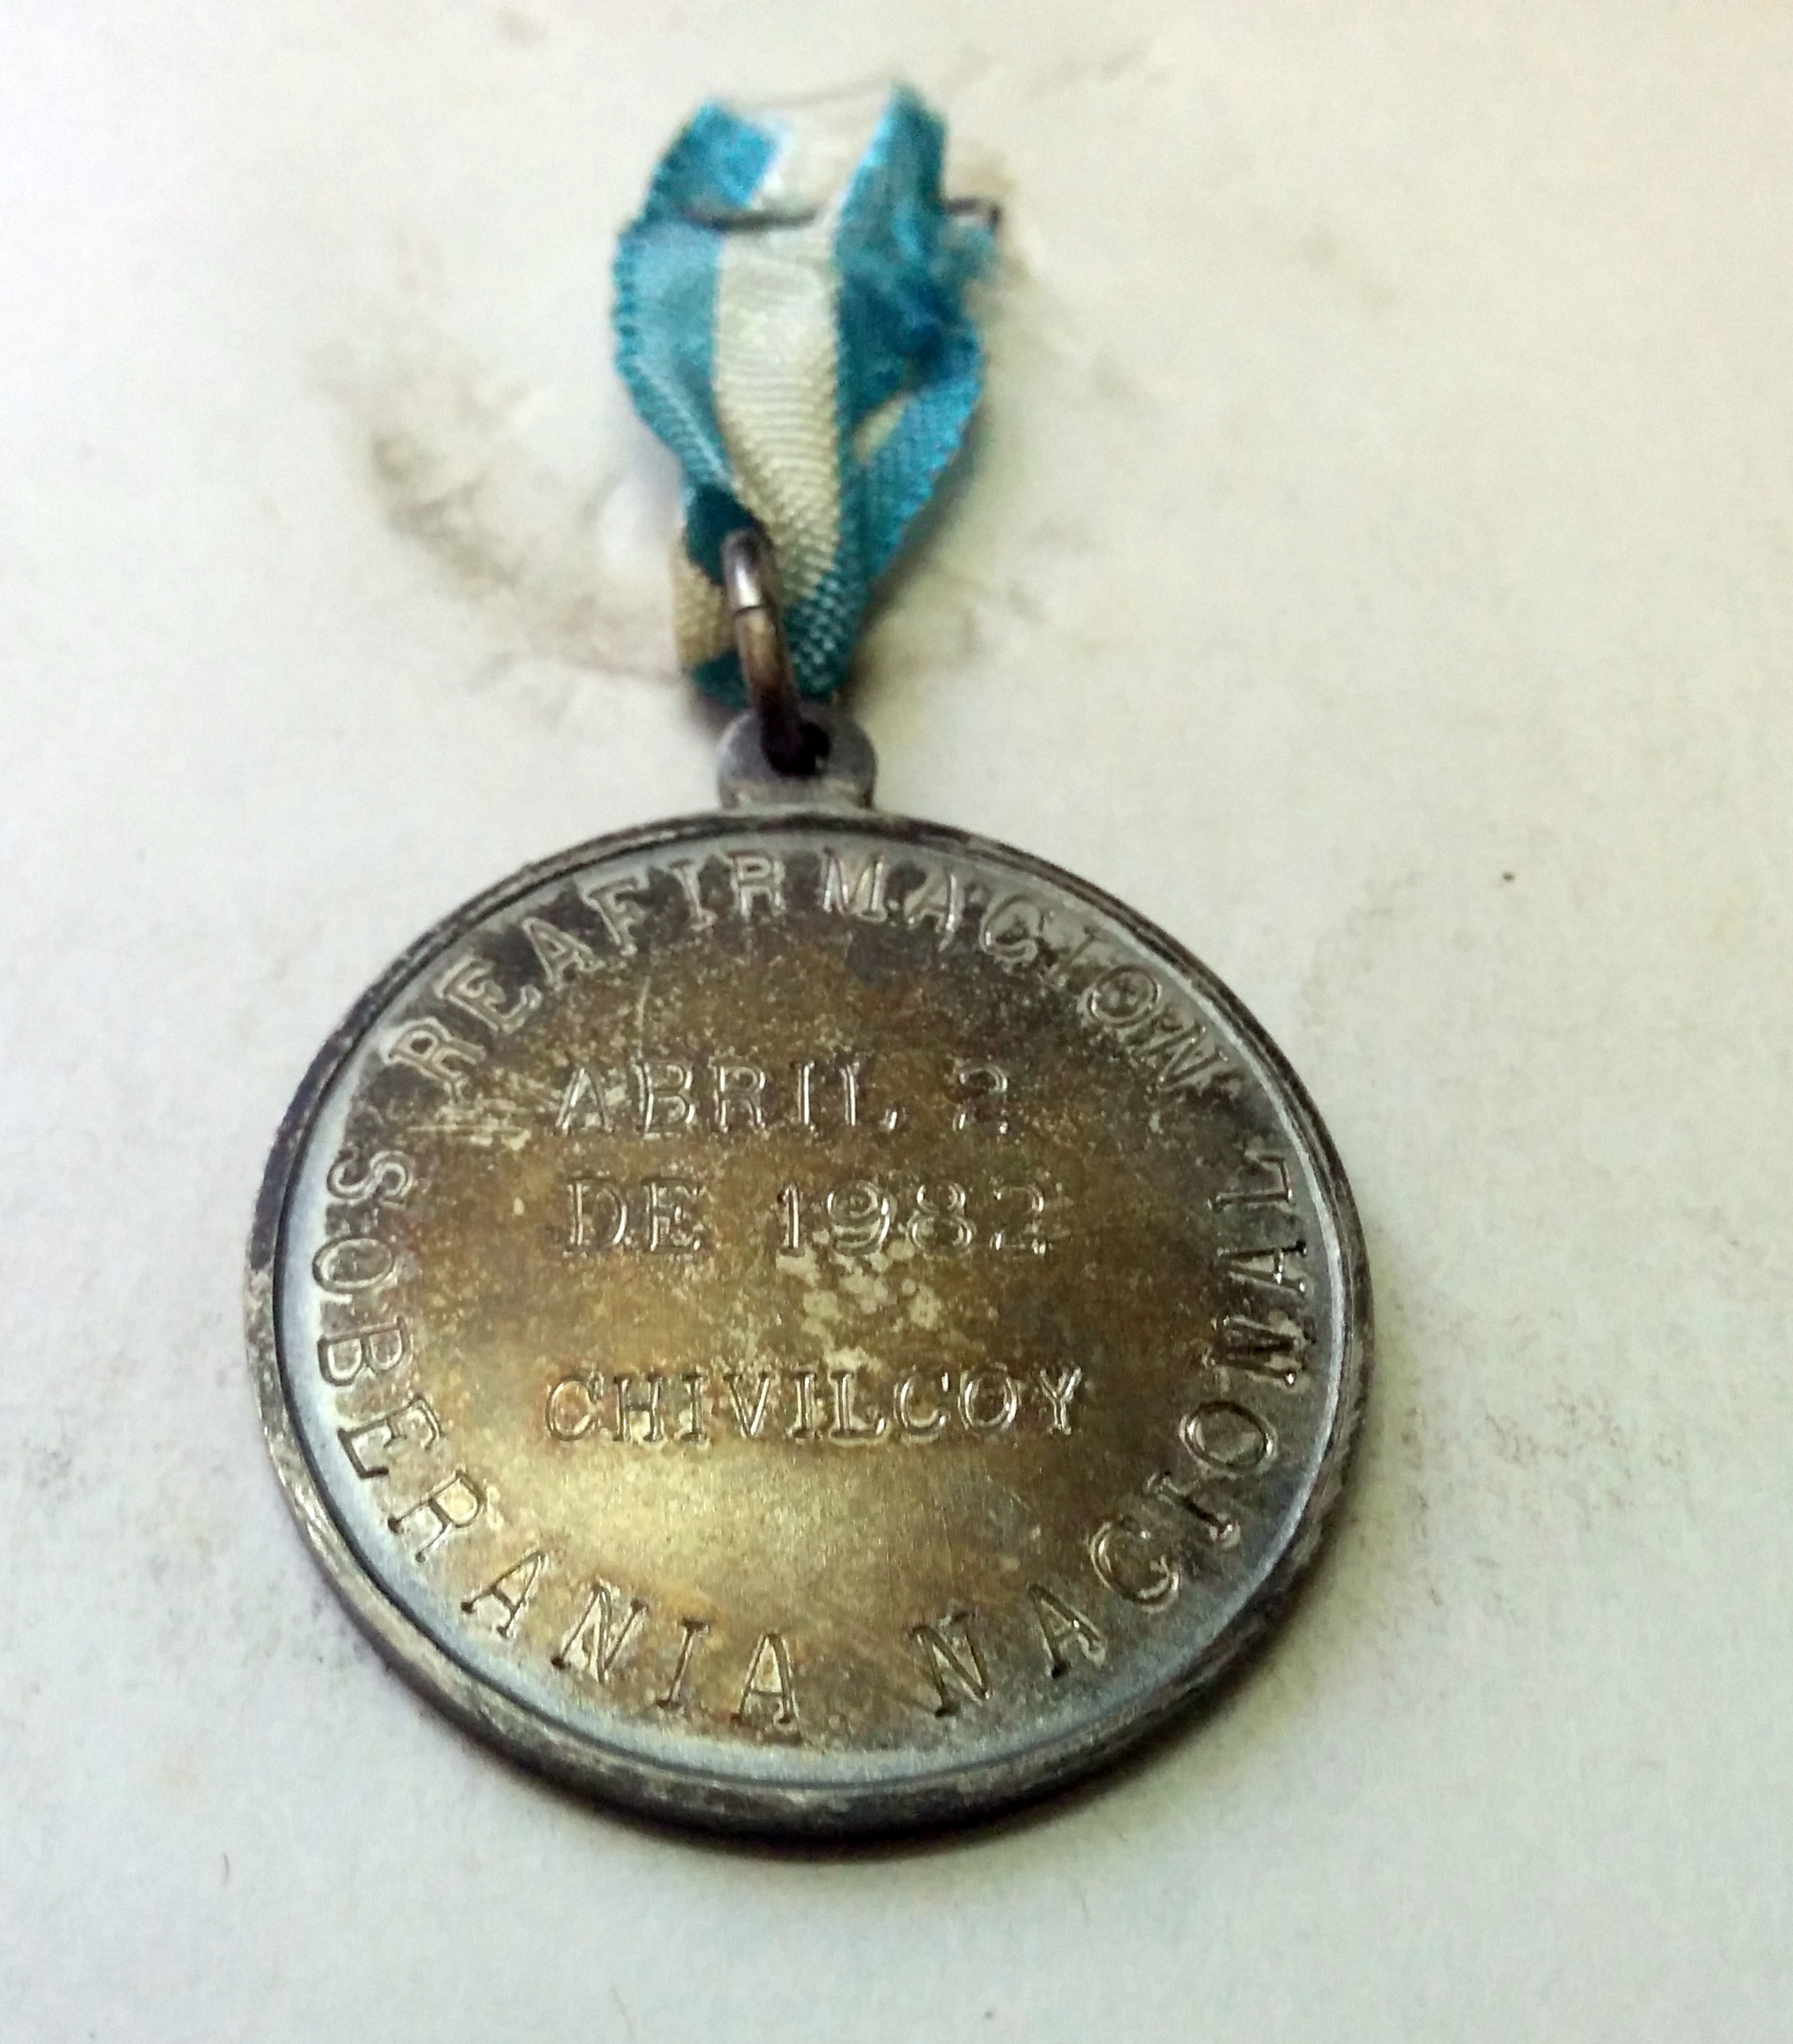 Una curiosa medalla chivilcoyana de las Islas Malvinas